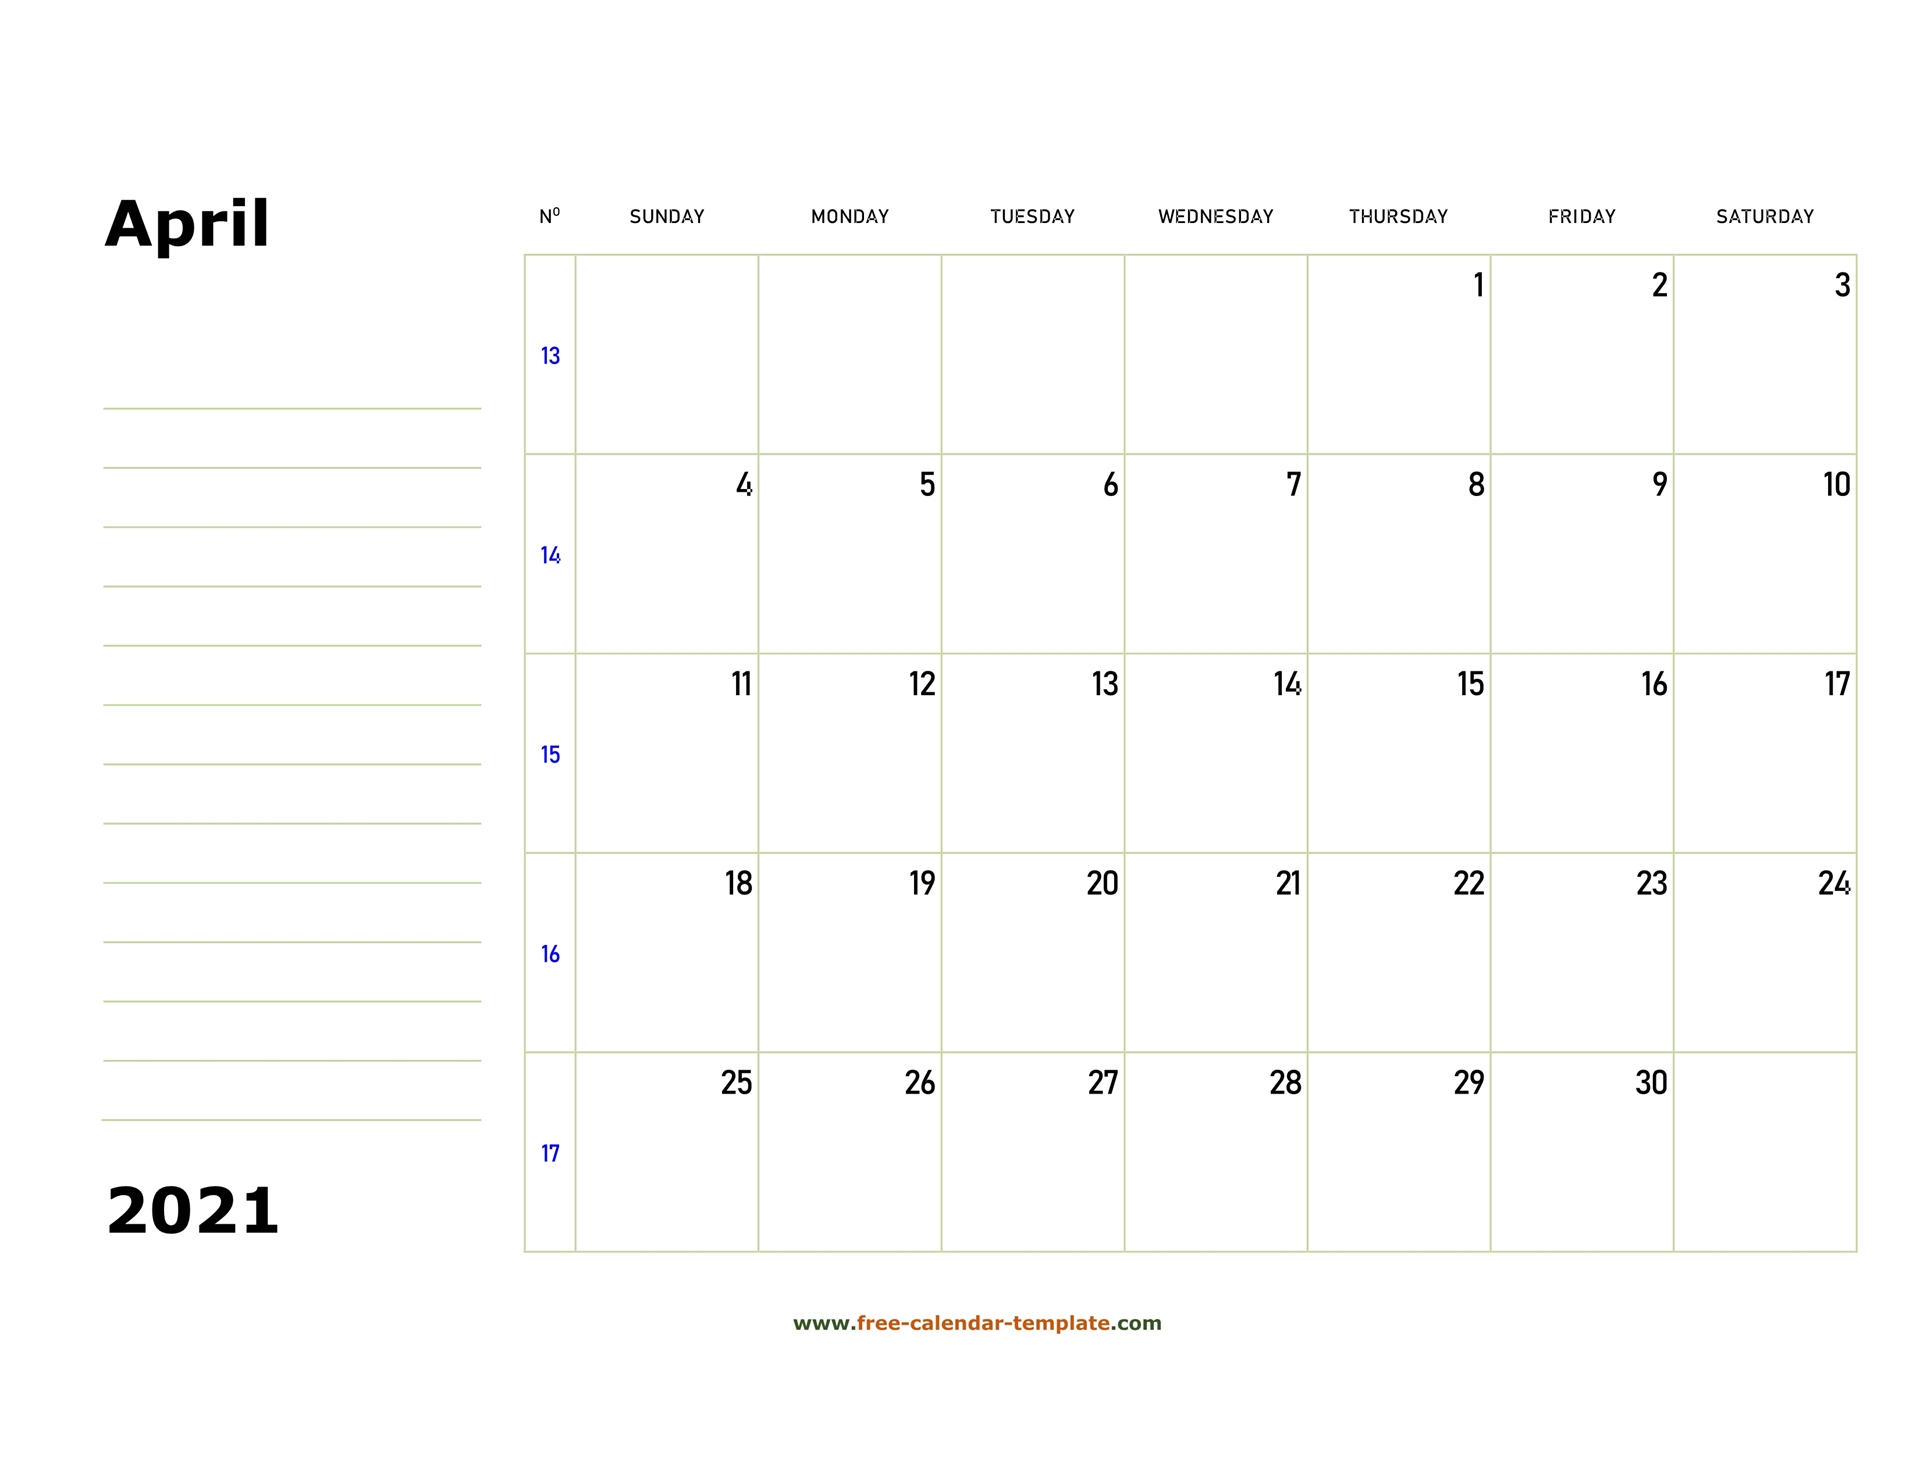 Printable April 2021 Calendar Box And Lines For Notes Free Calendar Template Com